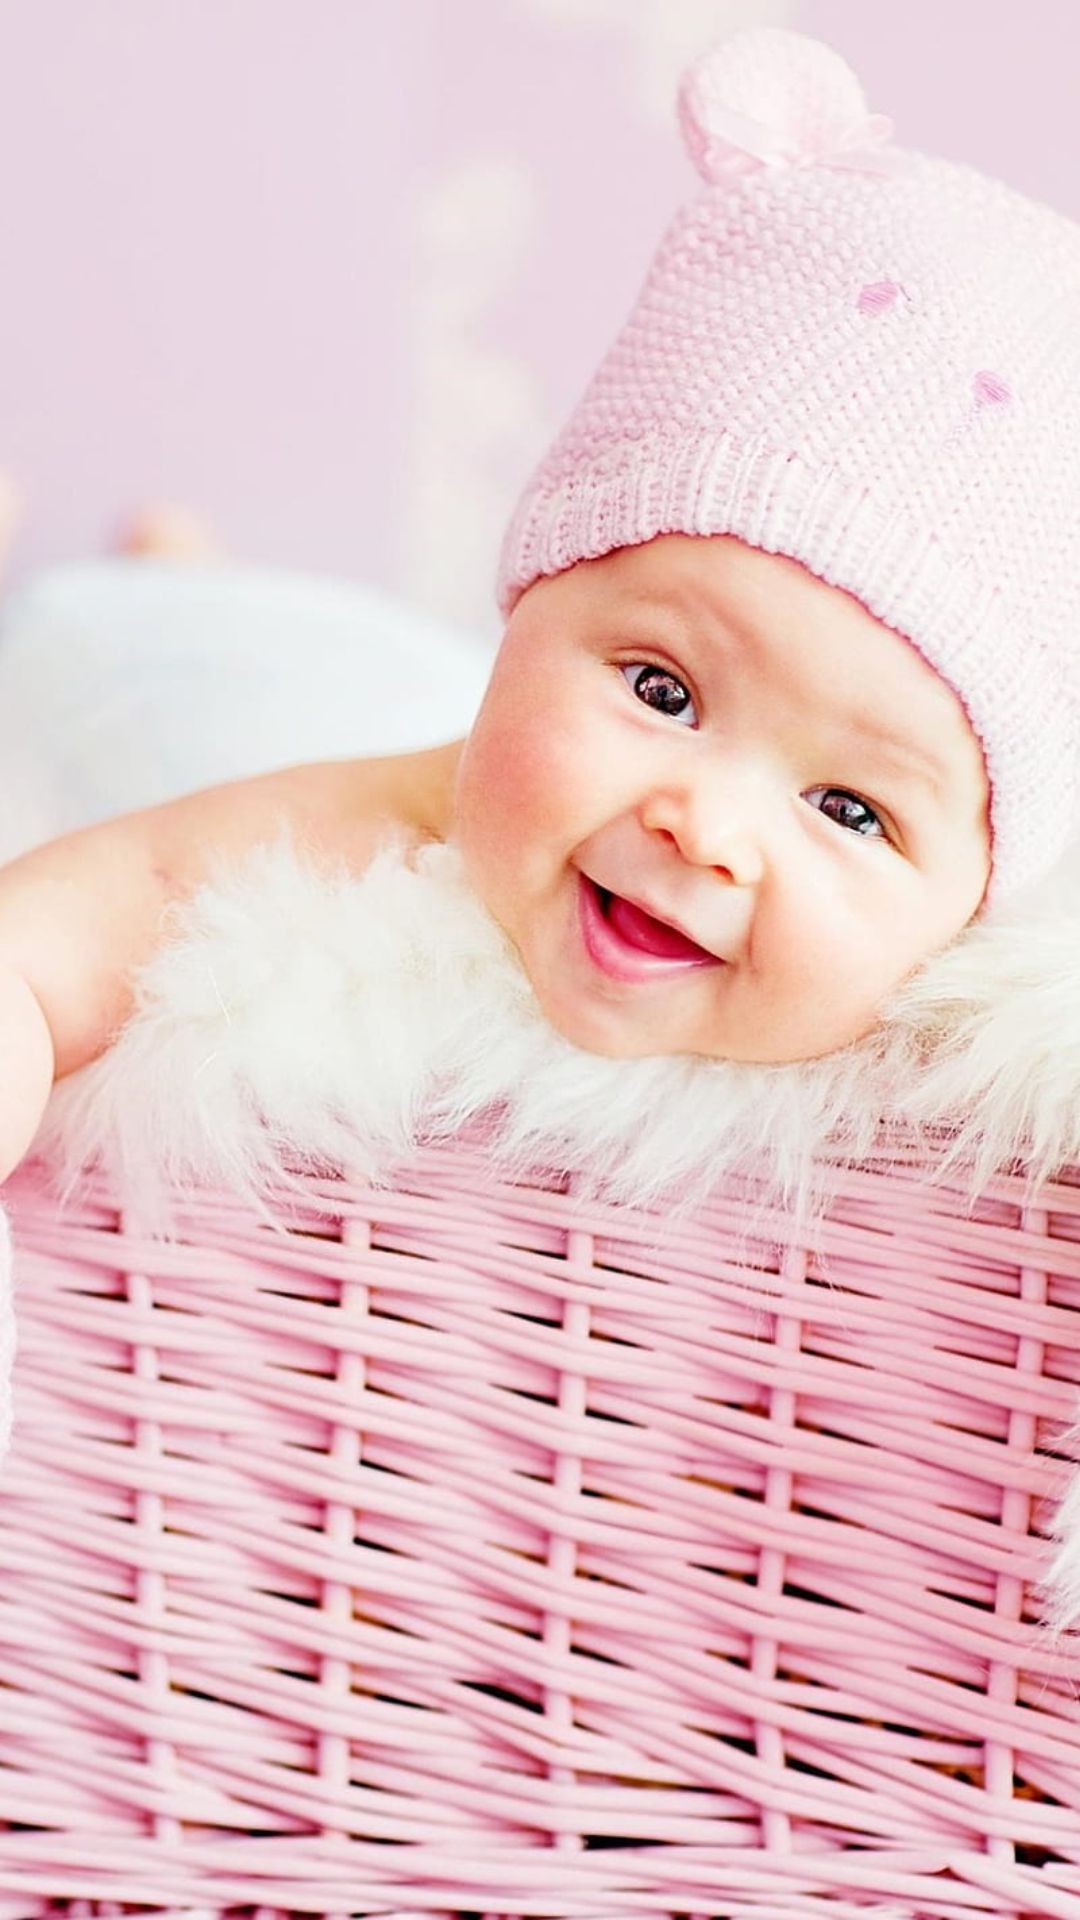 Cute Baby Wallpapers - Top 35 Best Cute